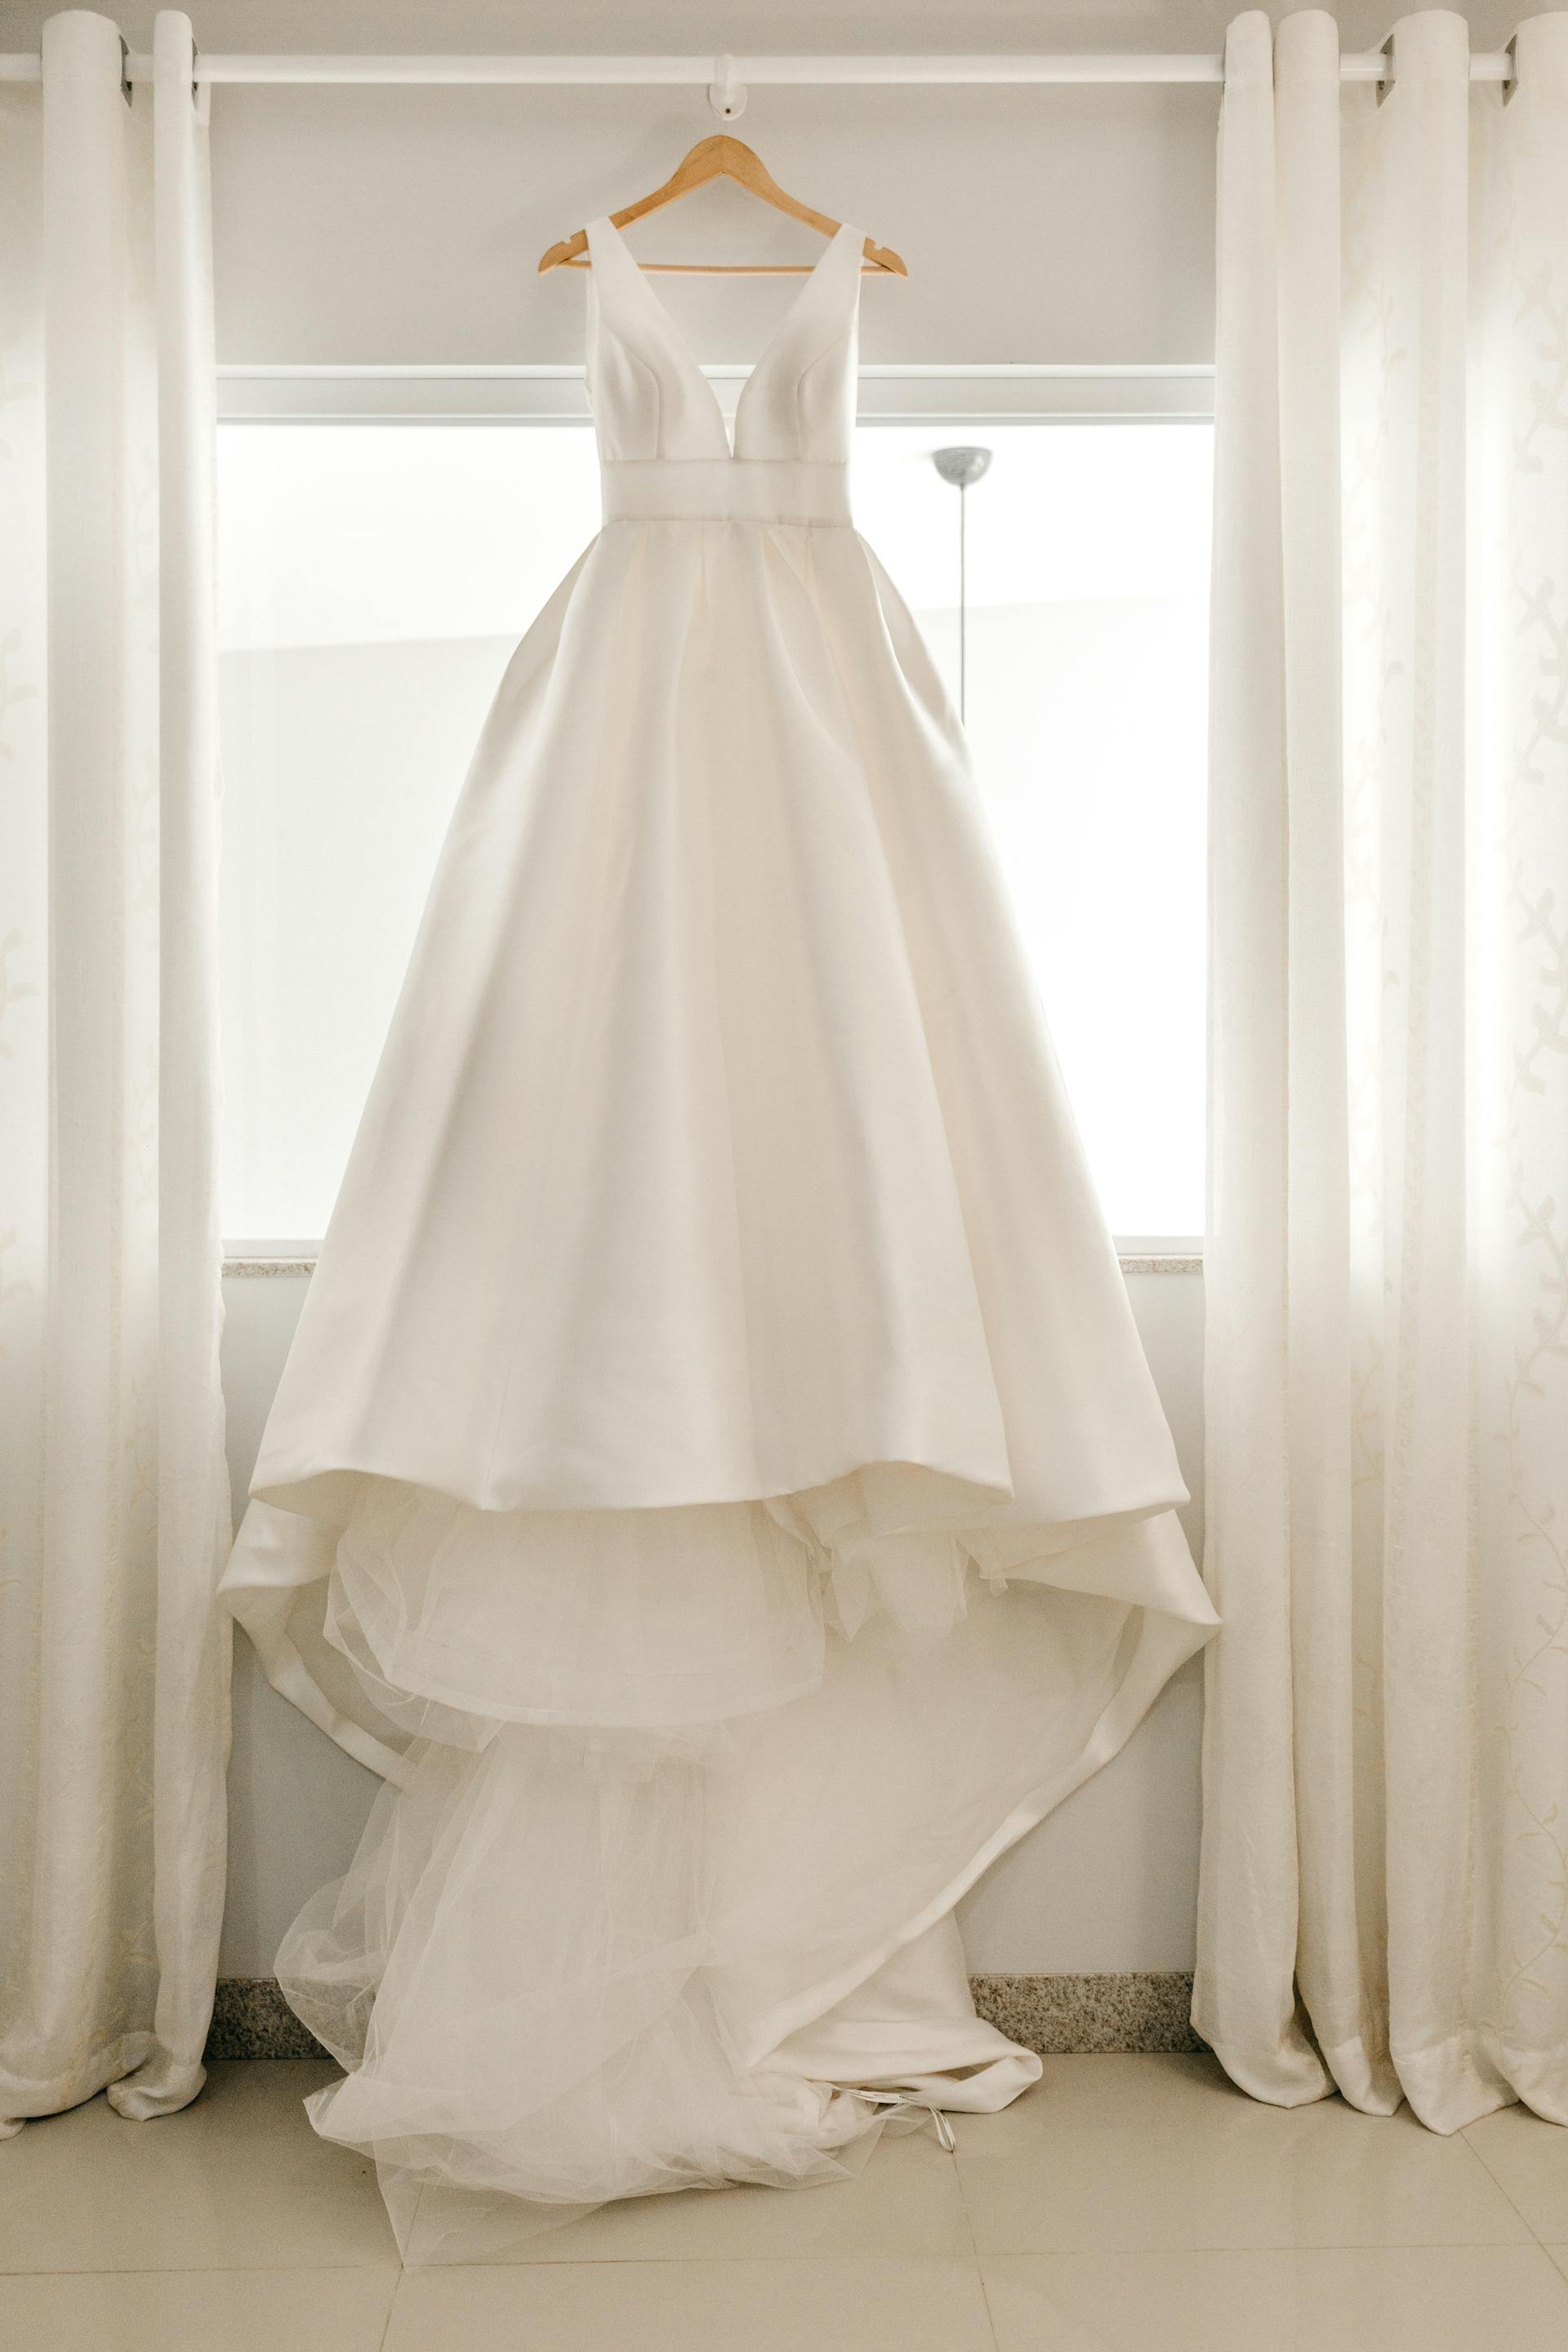 Ein weißes Hochzeitskleid auf einem Kleiderbügel | Quelle: Pexels